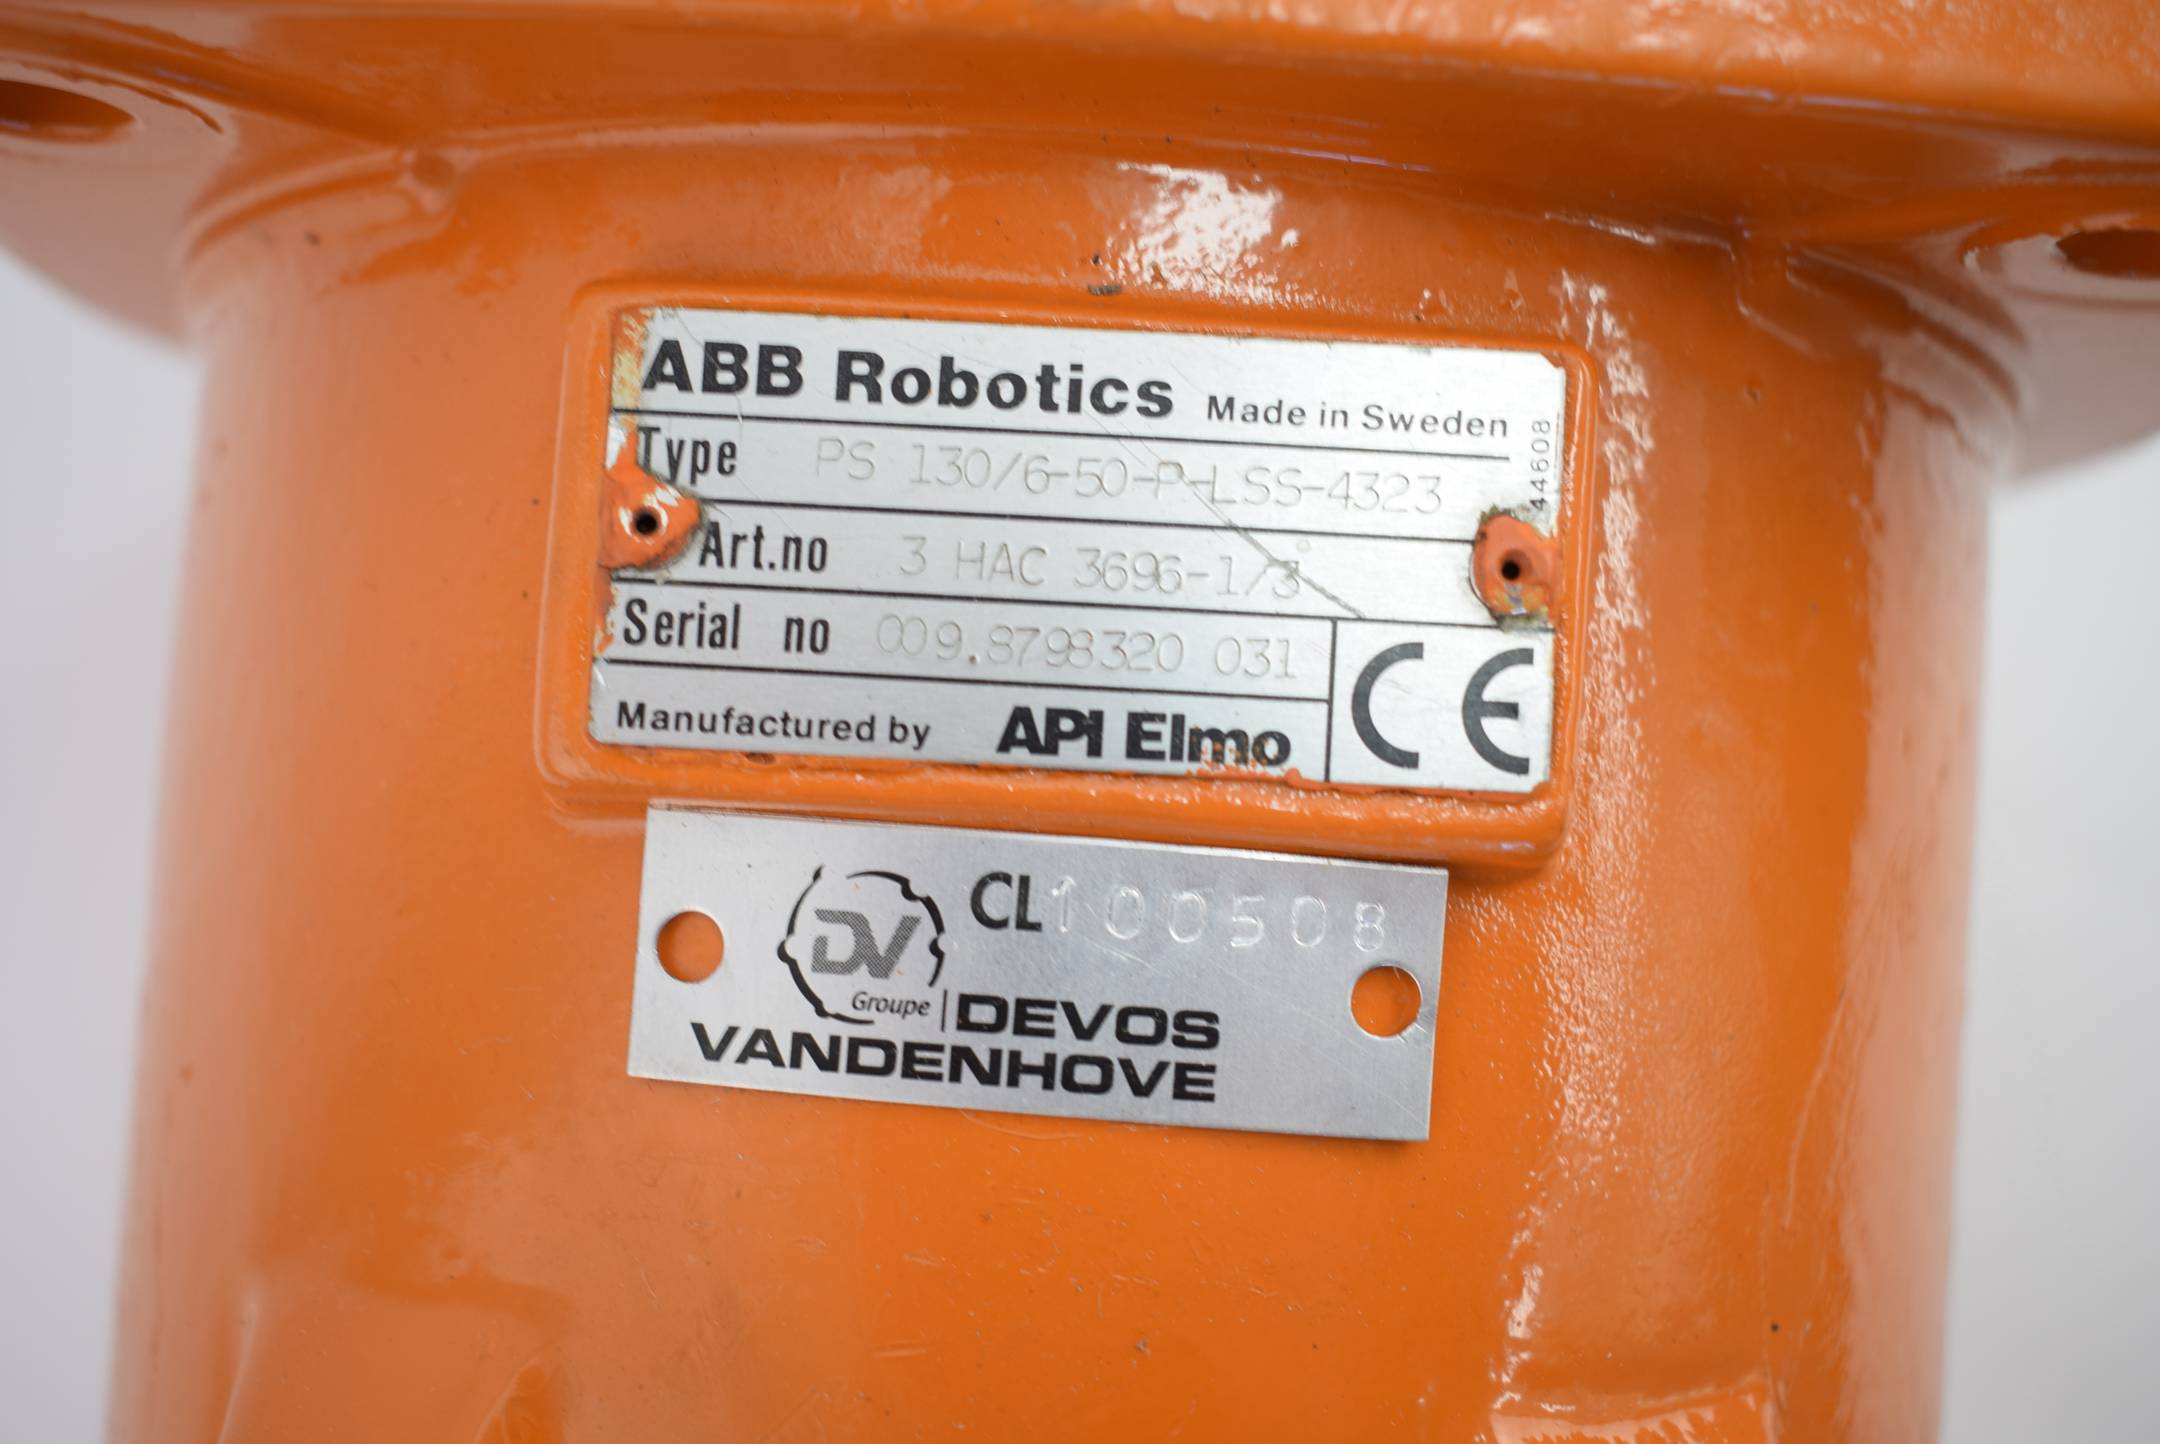 ABB Robotics Servomotor 3HAC3696-1/3 ( PS 130/6-50-P-LSS-4323 )